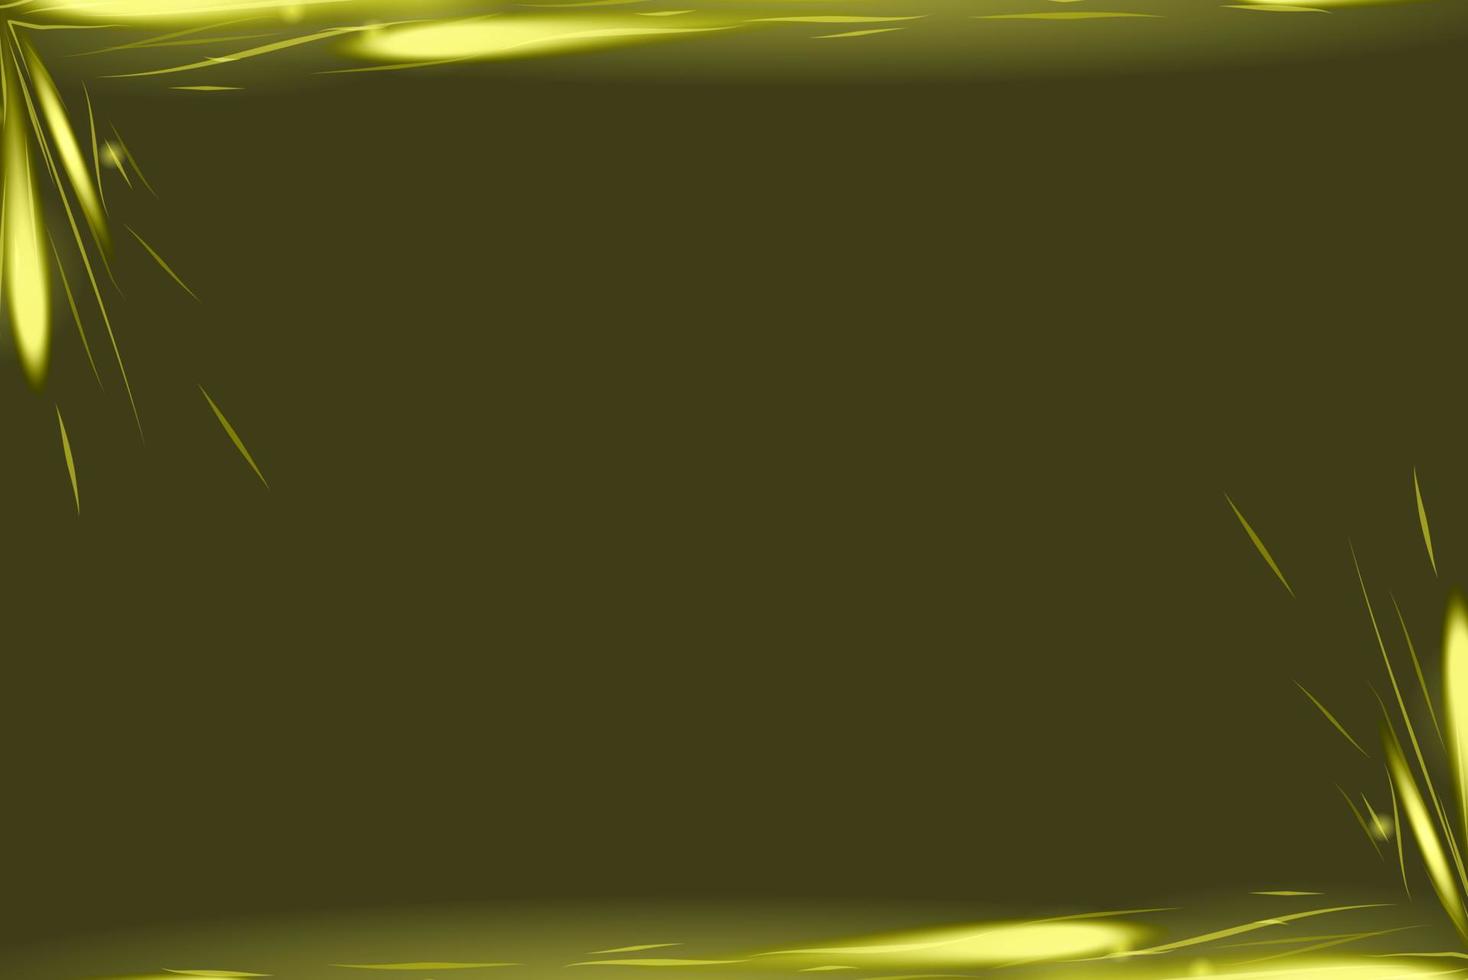 fundo abstrato amarelo de meio-tom com efeito de ornamento de brilho brilhante. pode usar para cartaz, banner comercial, folheto, anúncio, folheto, catálogo, web, site, site, apresentação, capa de livro, folheto vetor